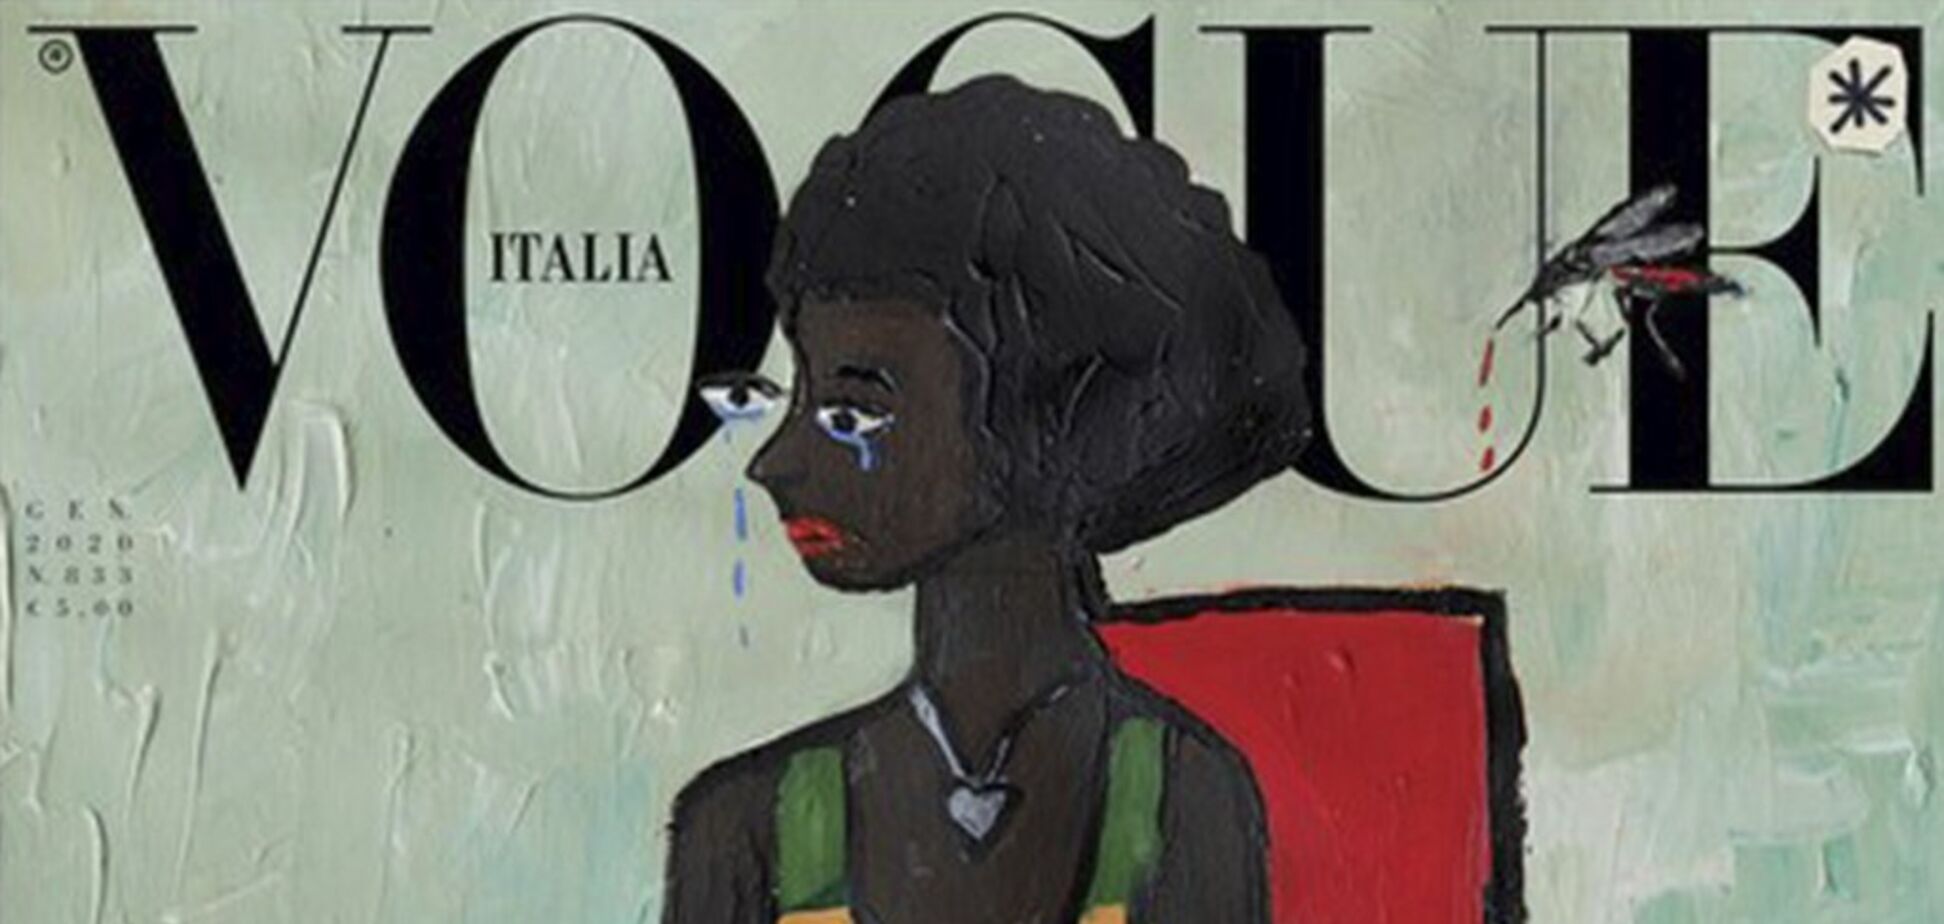 Журнал Vogue в Италии впервые выпустил номер без единой фотографии